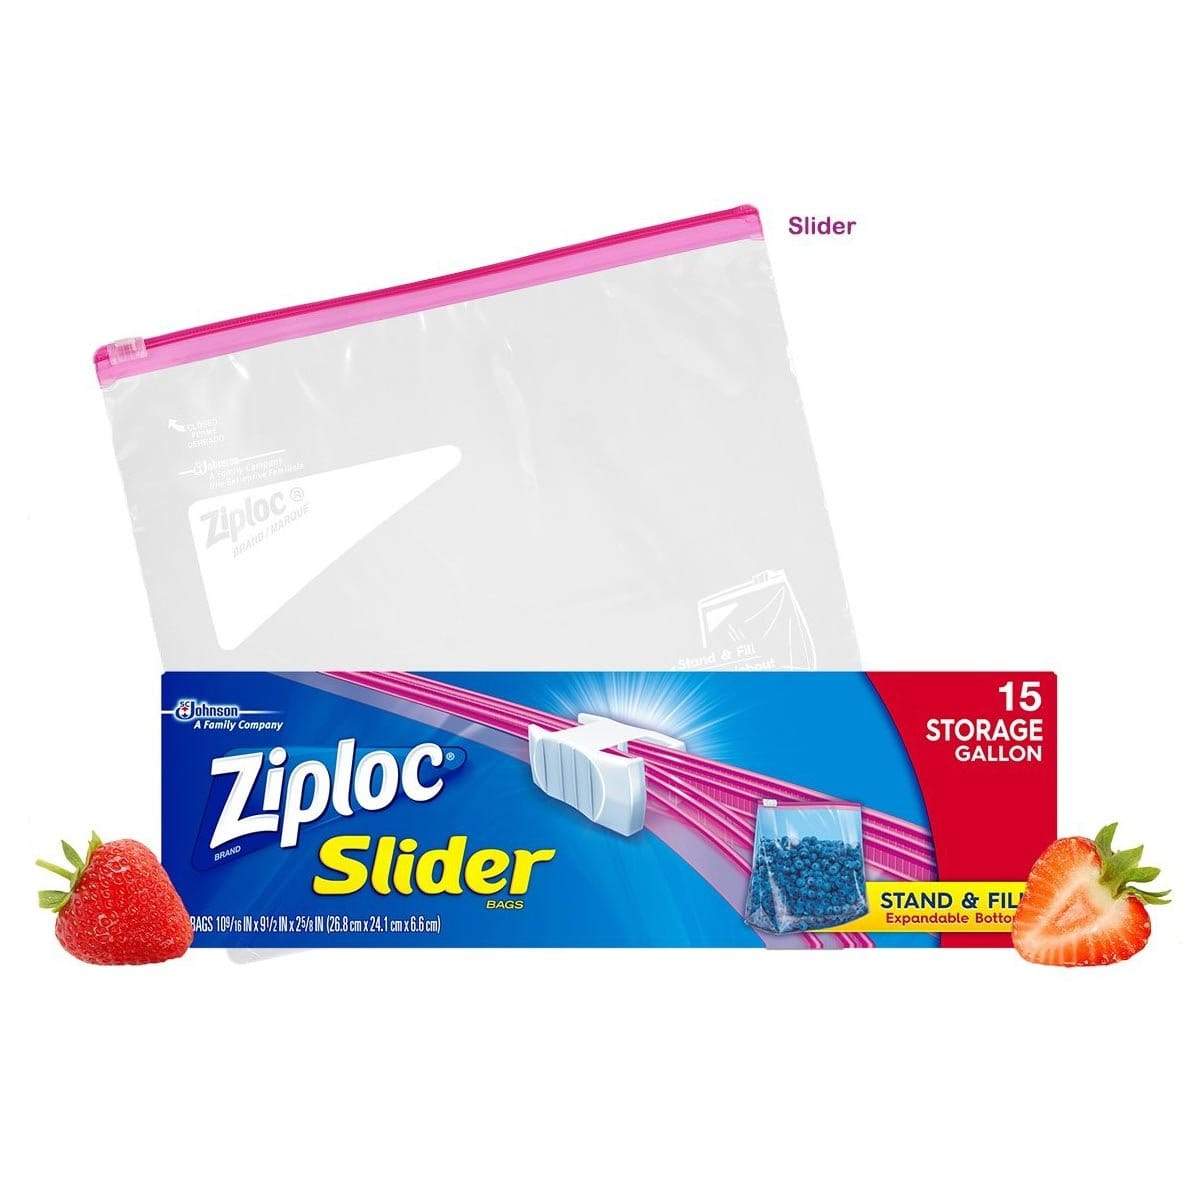 Shop Ziploc Gallon Quart and Sandwich Storage Bags Bundle at Lowescom